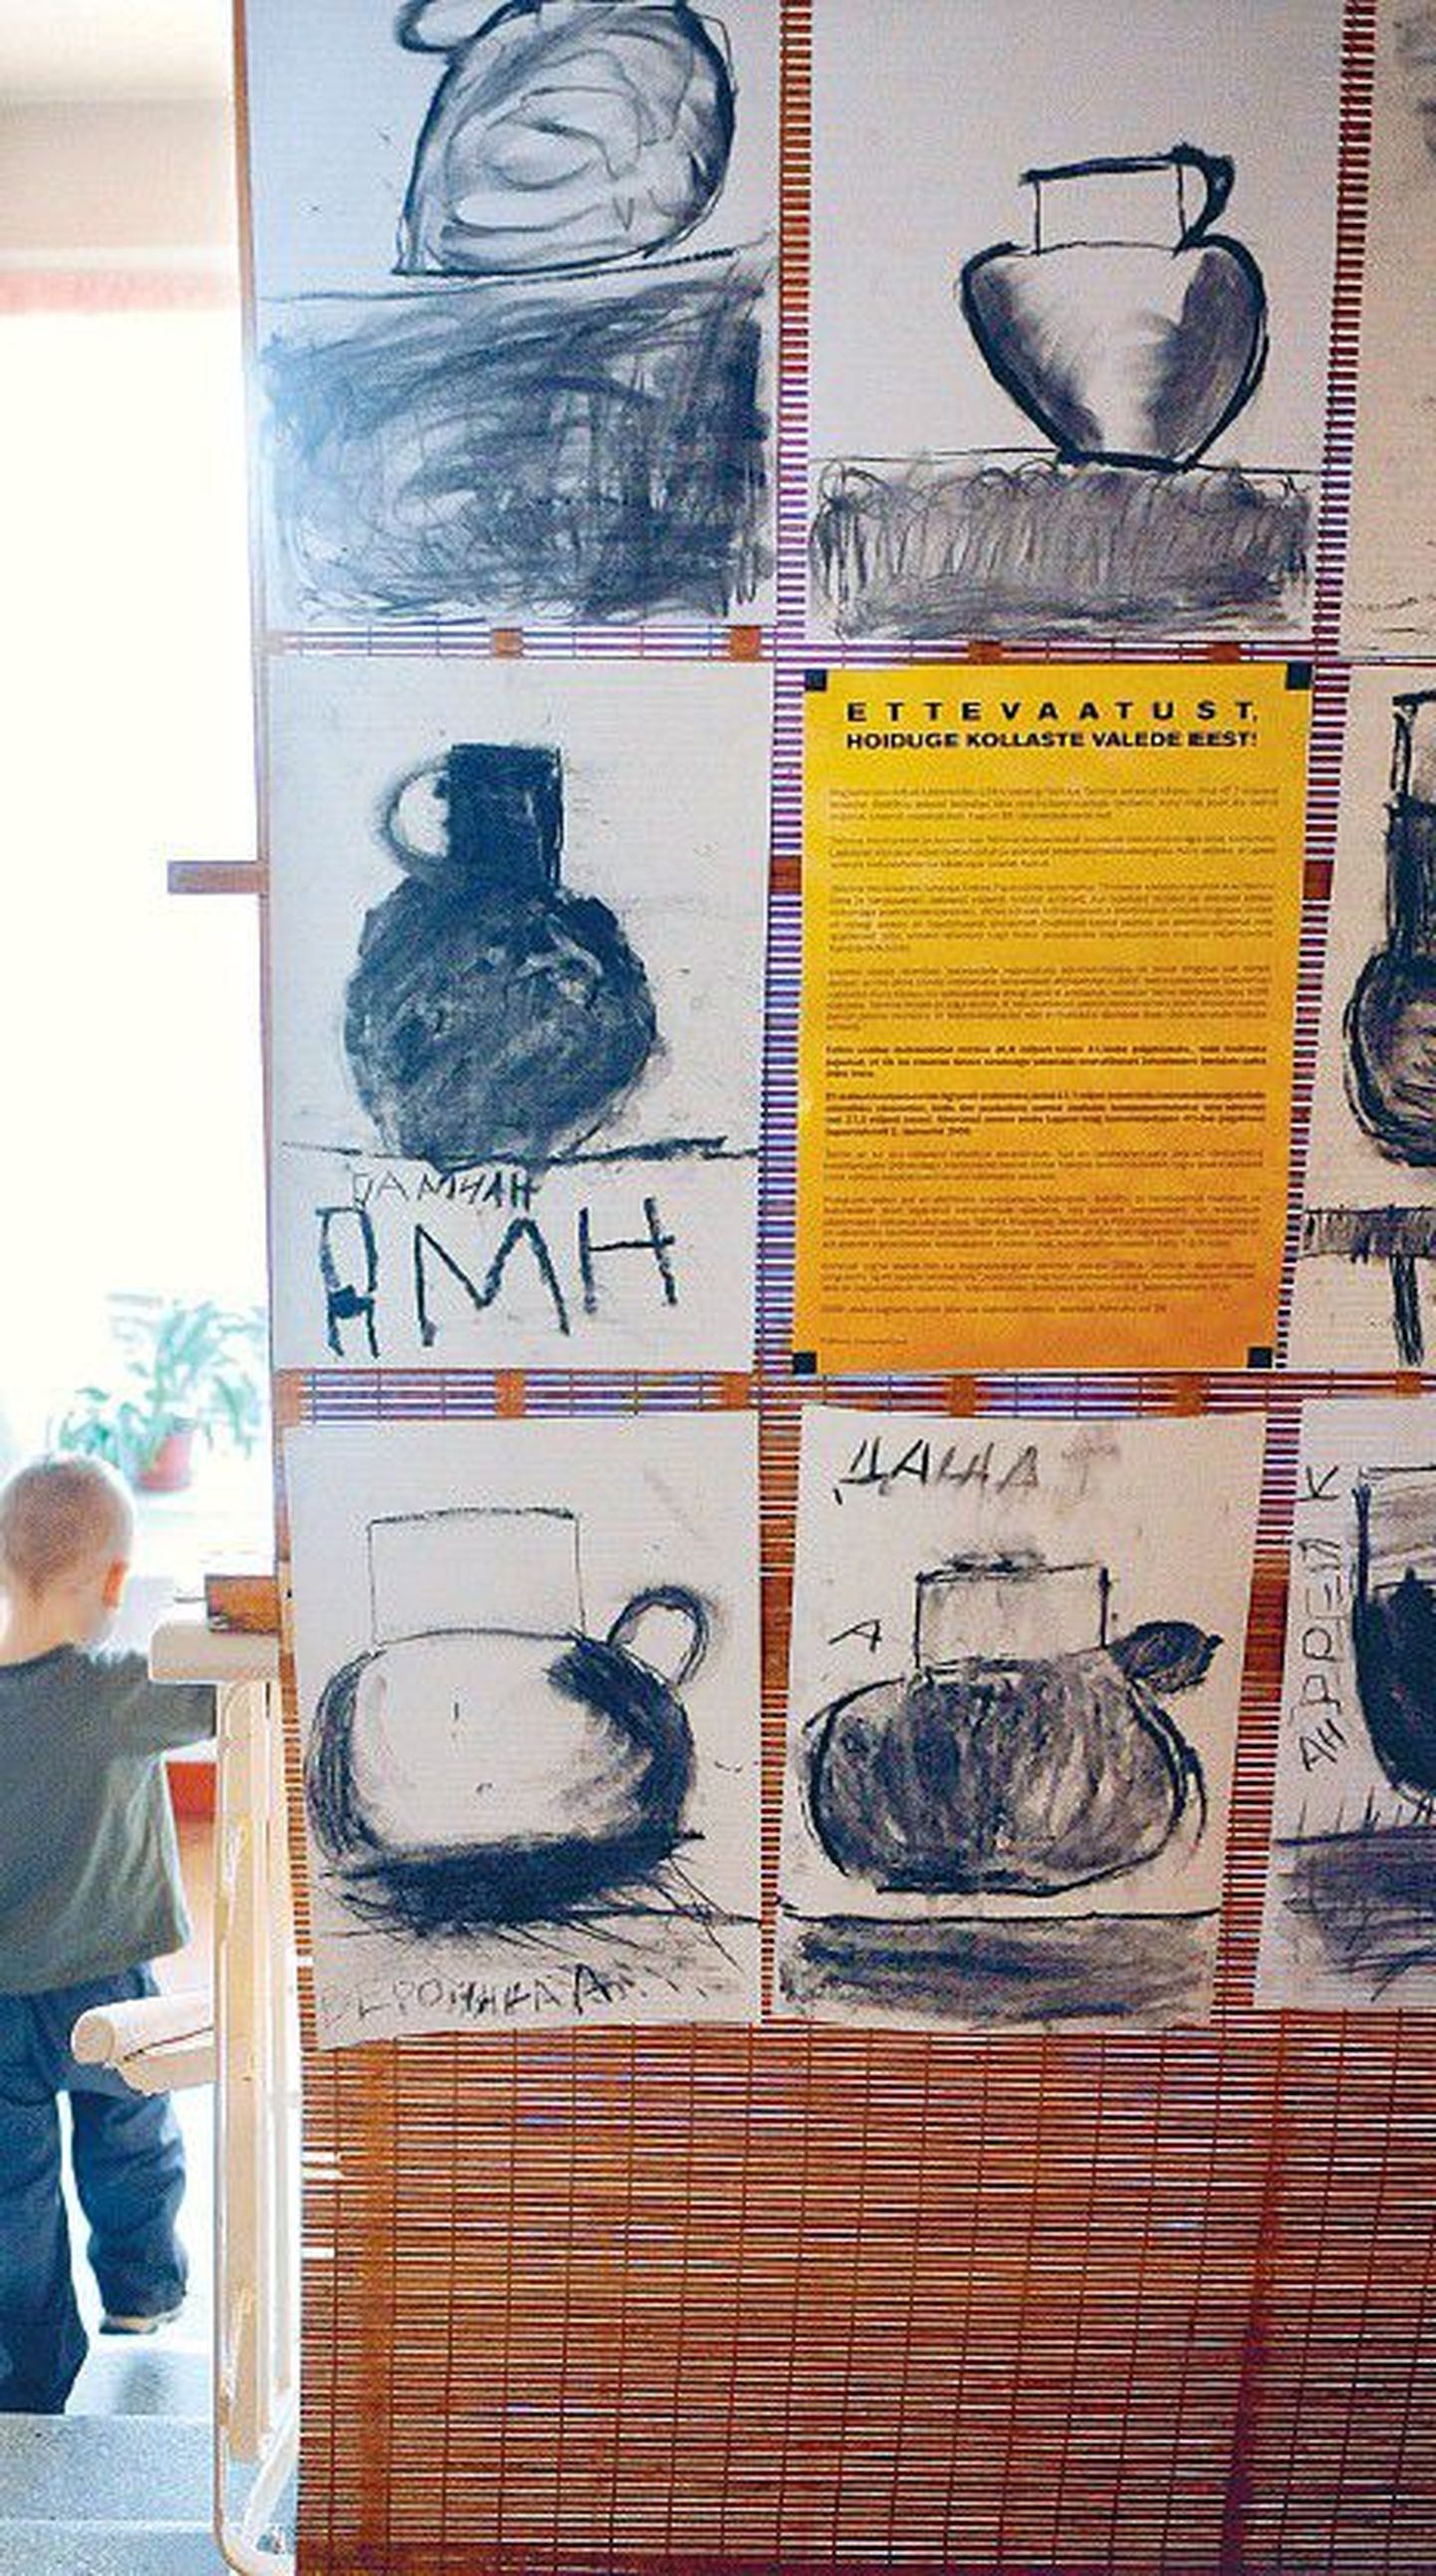 Tallinna linnavalitsuse propagandaplakat eile ühes pealinna lasteaias laste joonistuste keskel. Lasteaed palus oma nime avalikuks mitte teha.